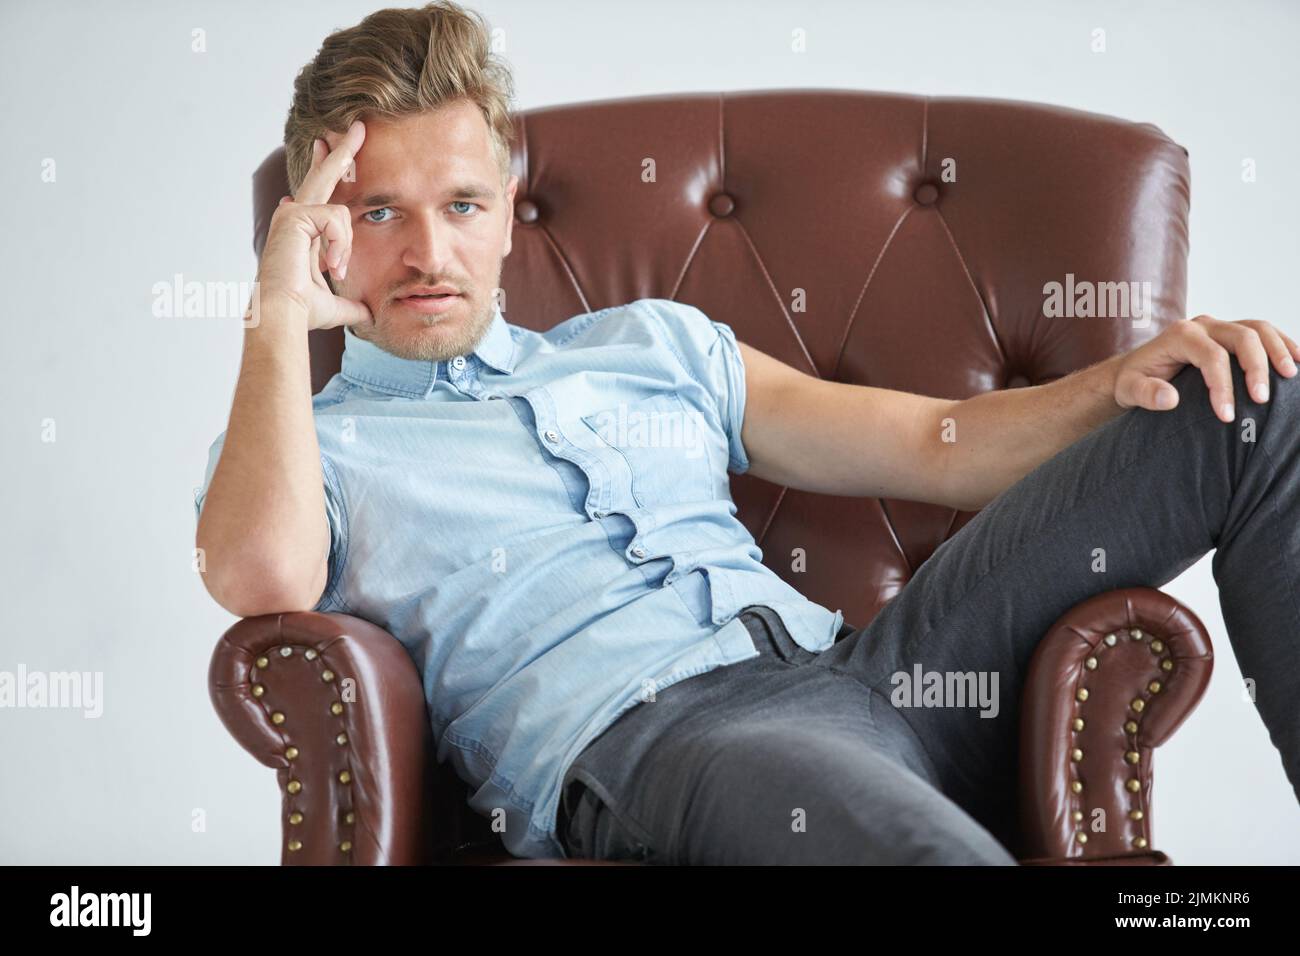 Portrait d'un homme intelligent, élégant, charismatique, non rasé petite chemise bleue, assis sur un fauteuil en cuir brun, dialogue, négociations Banque D'Images